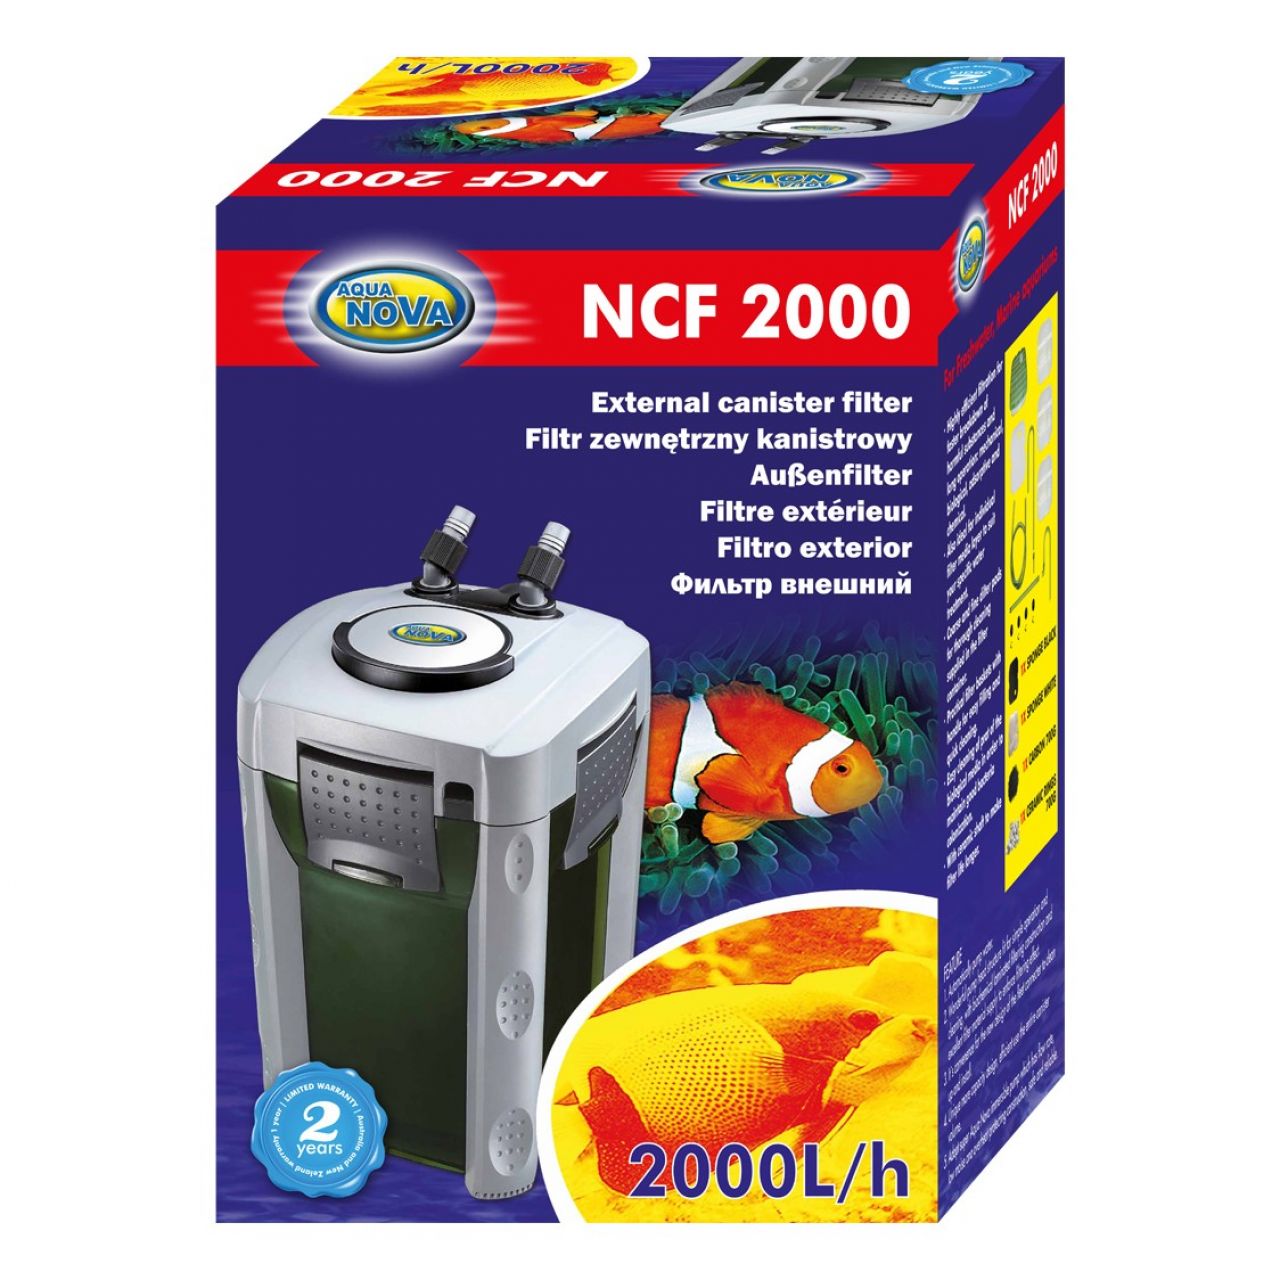 NCF-2000 Filtr zewnętrzny kubełkowy do akwarium do 800l Aqua Nova